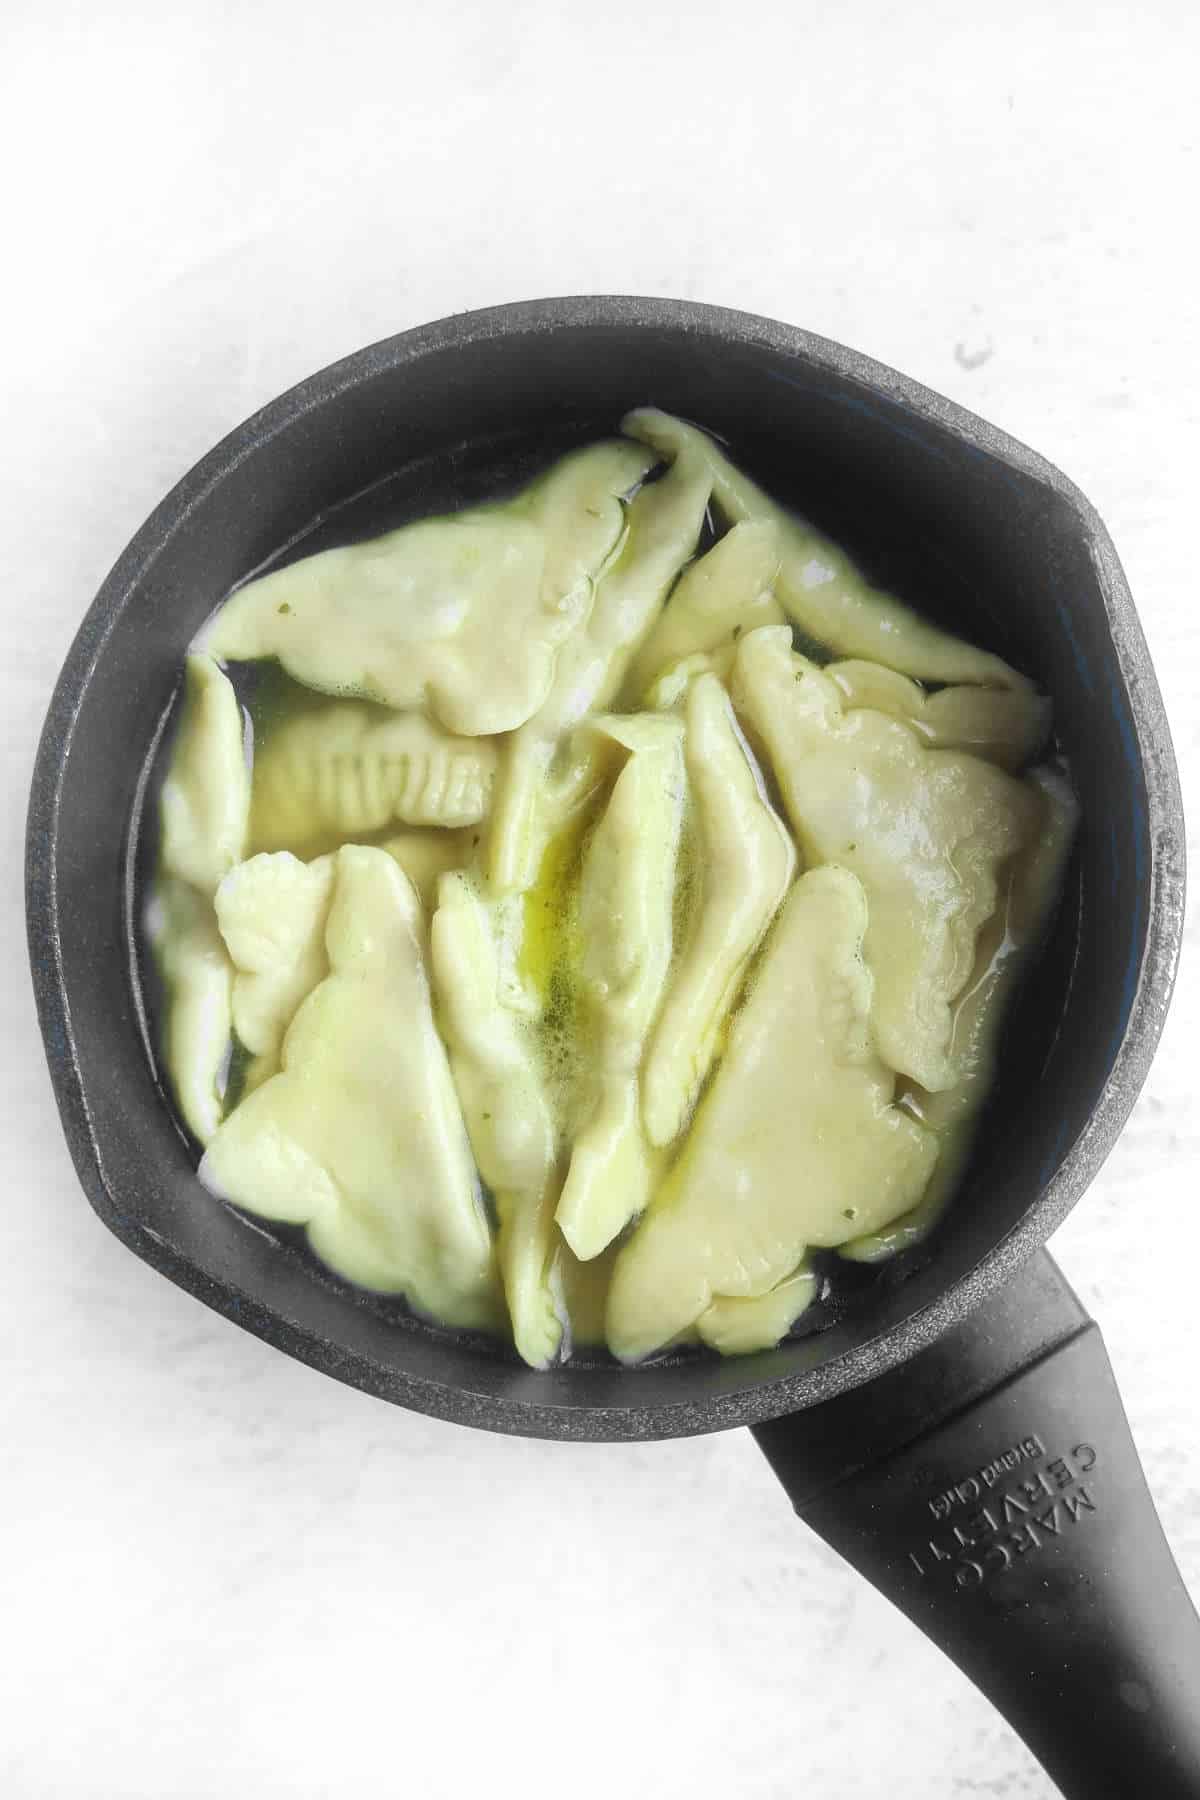 kreplach dumplings simmering in broth.